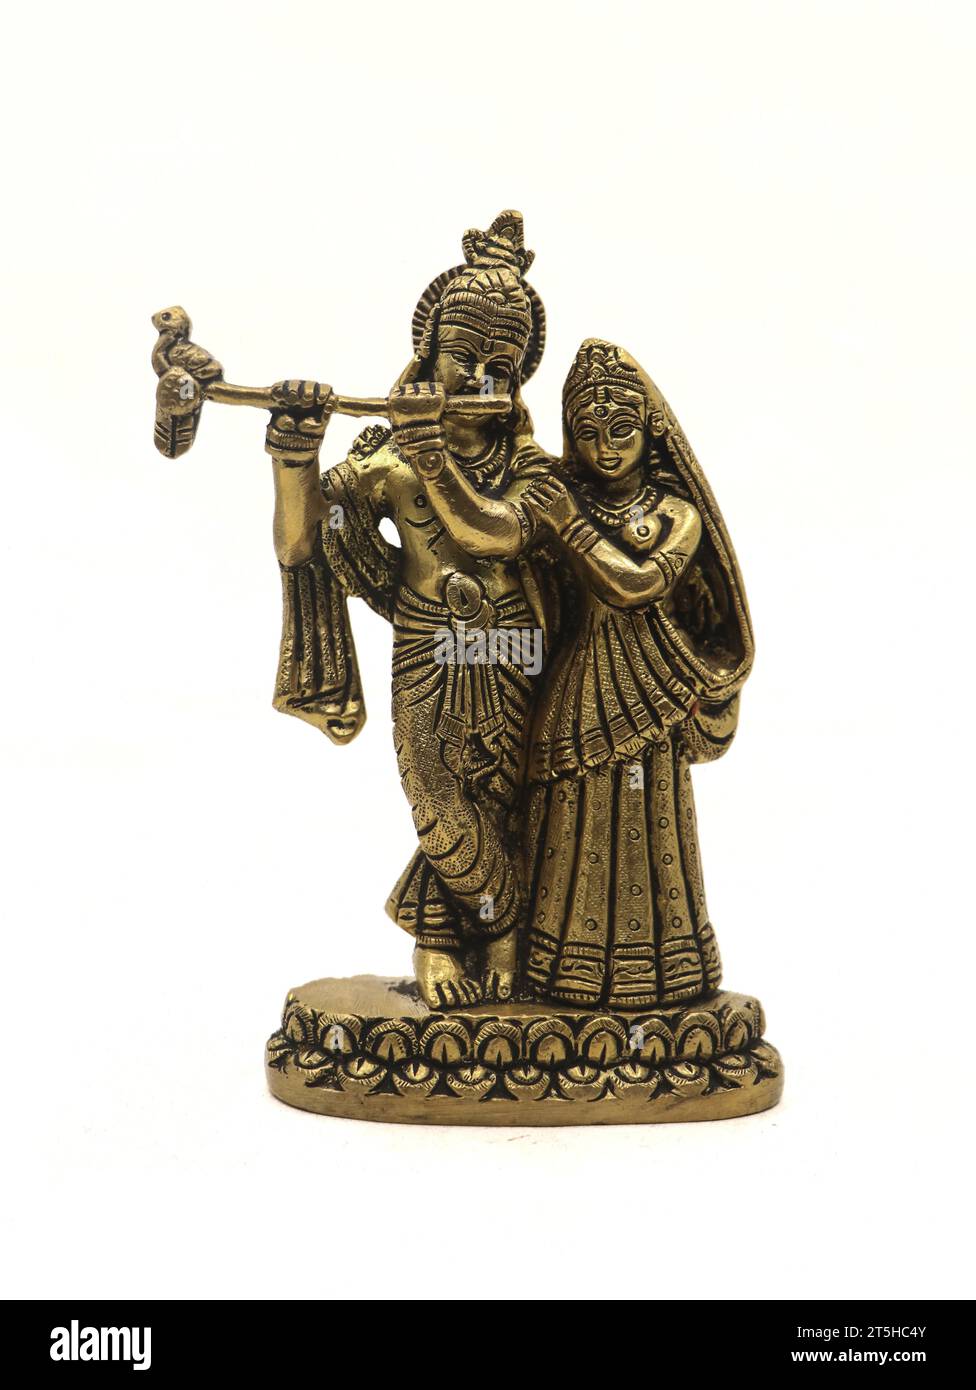 splendida scultura in bronzo del signore krishna e della moglie radha devi isolata su uno sfondo bianco Foto Stock